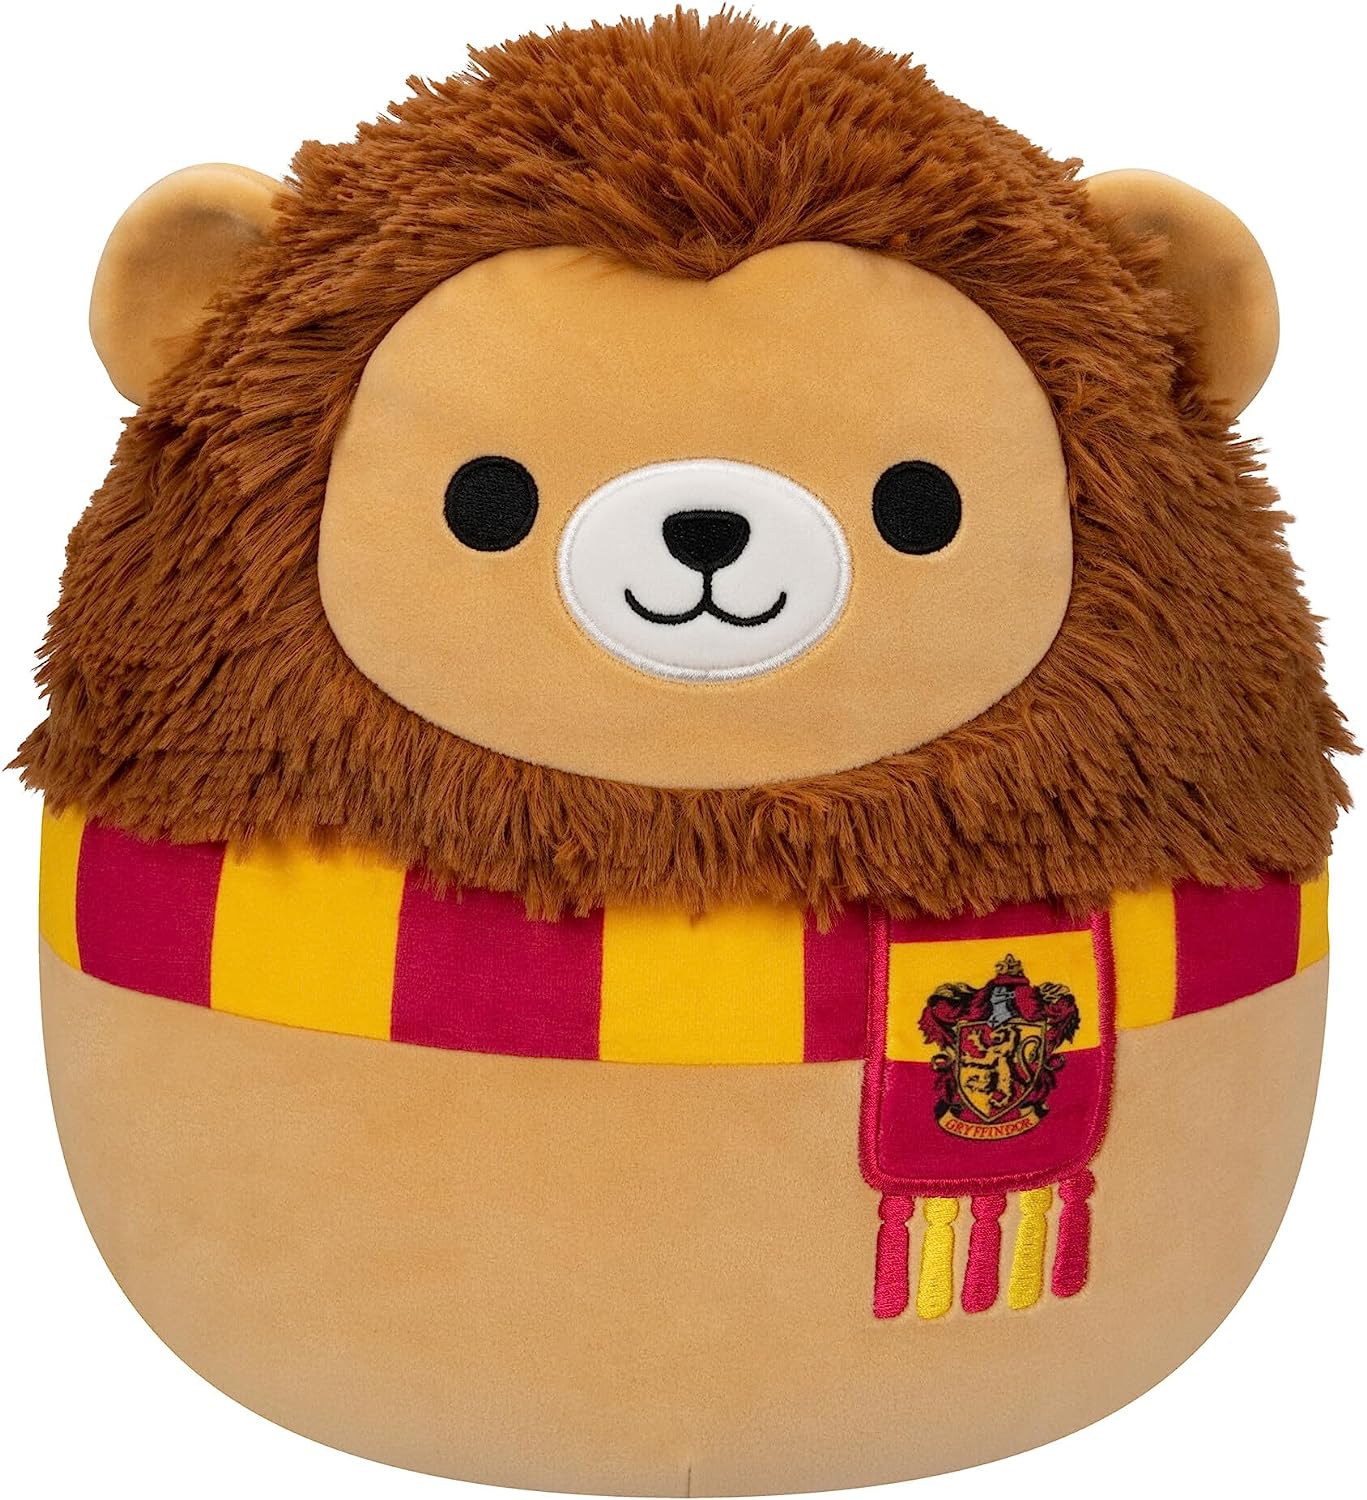 Harry Potter Plush Hufflepuff Mascot at